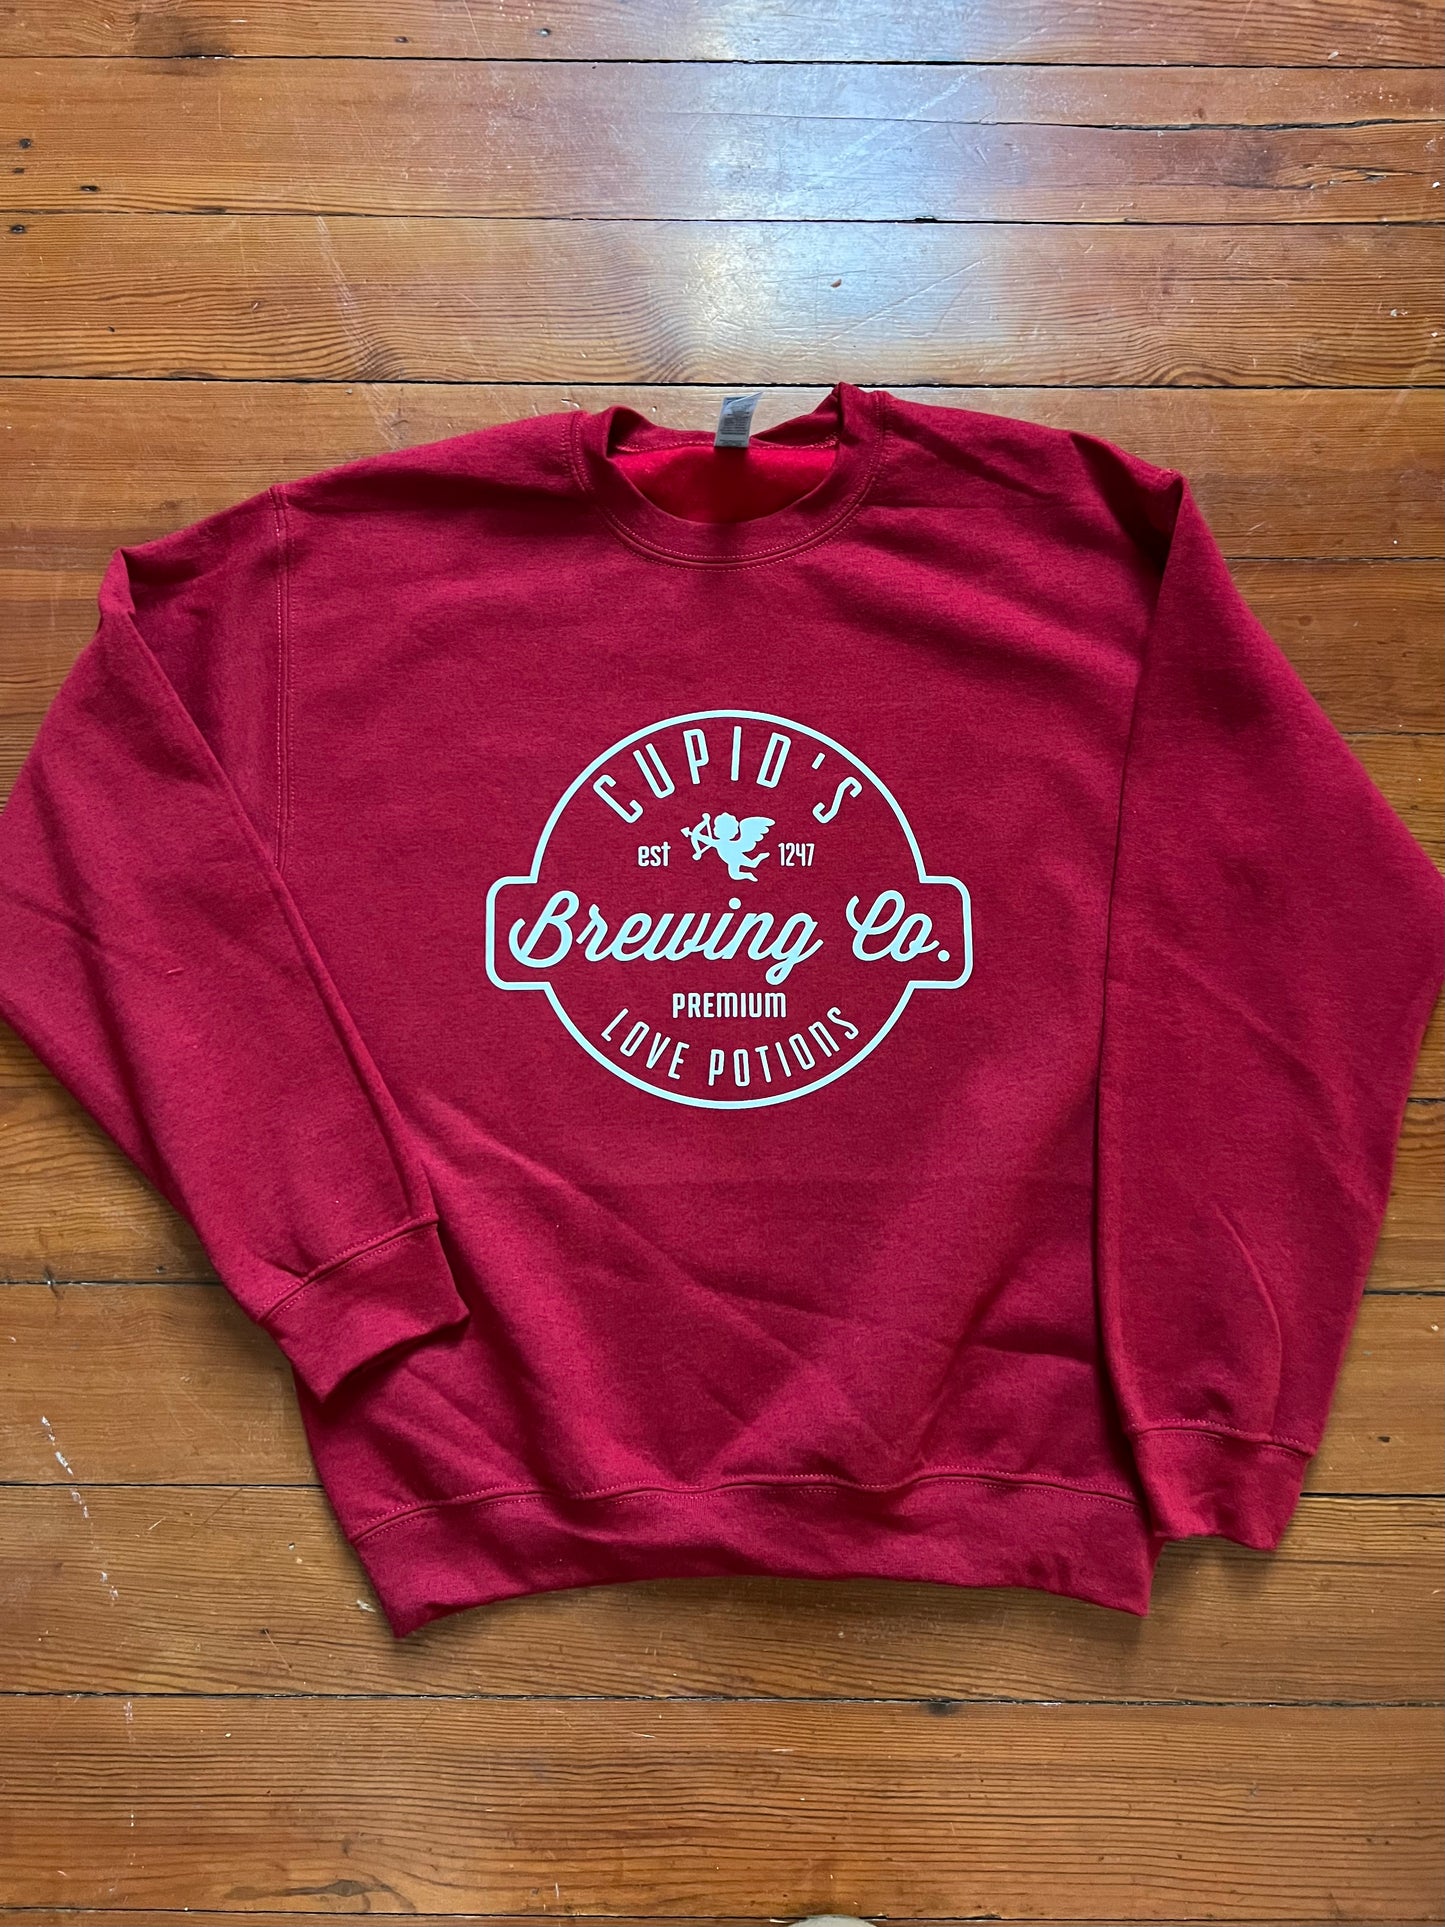 Cupid's Brewing Sweatshirt